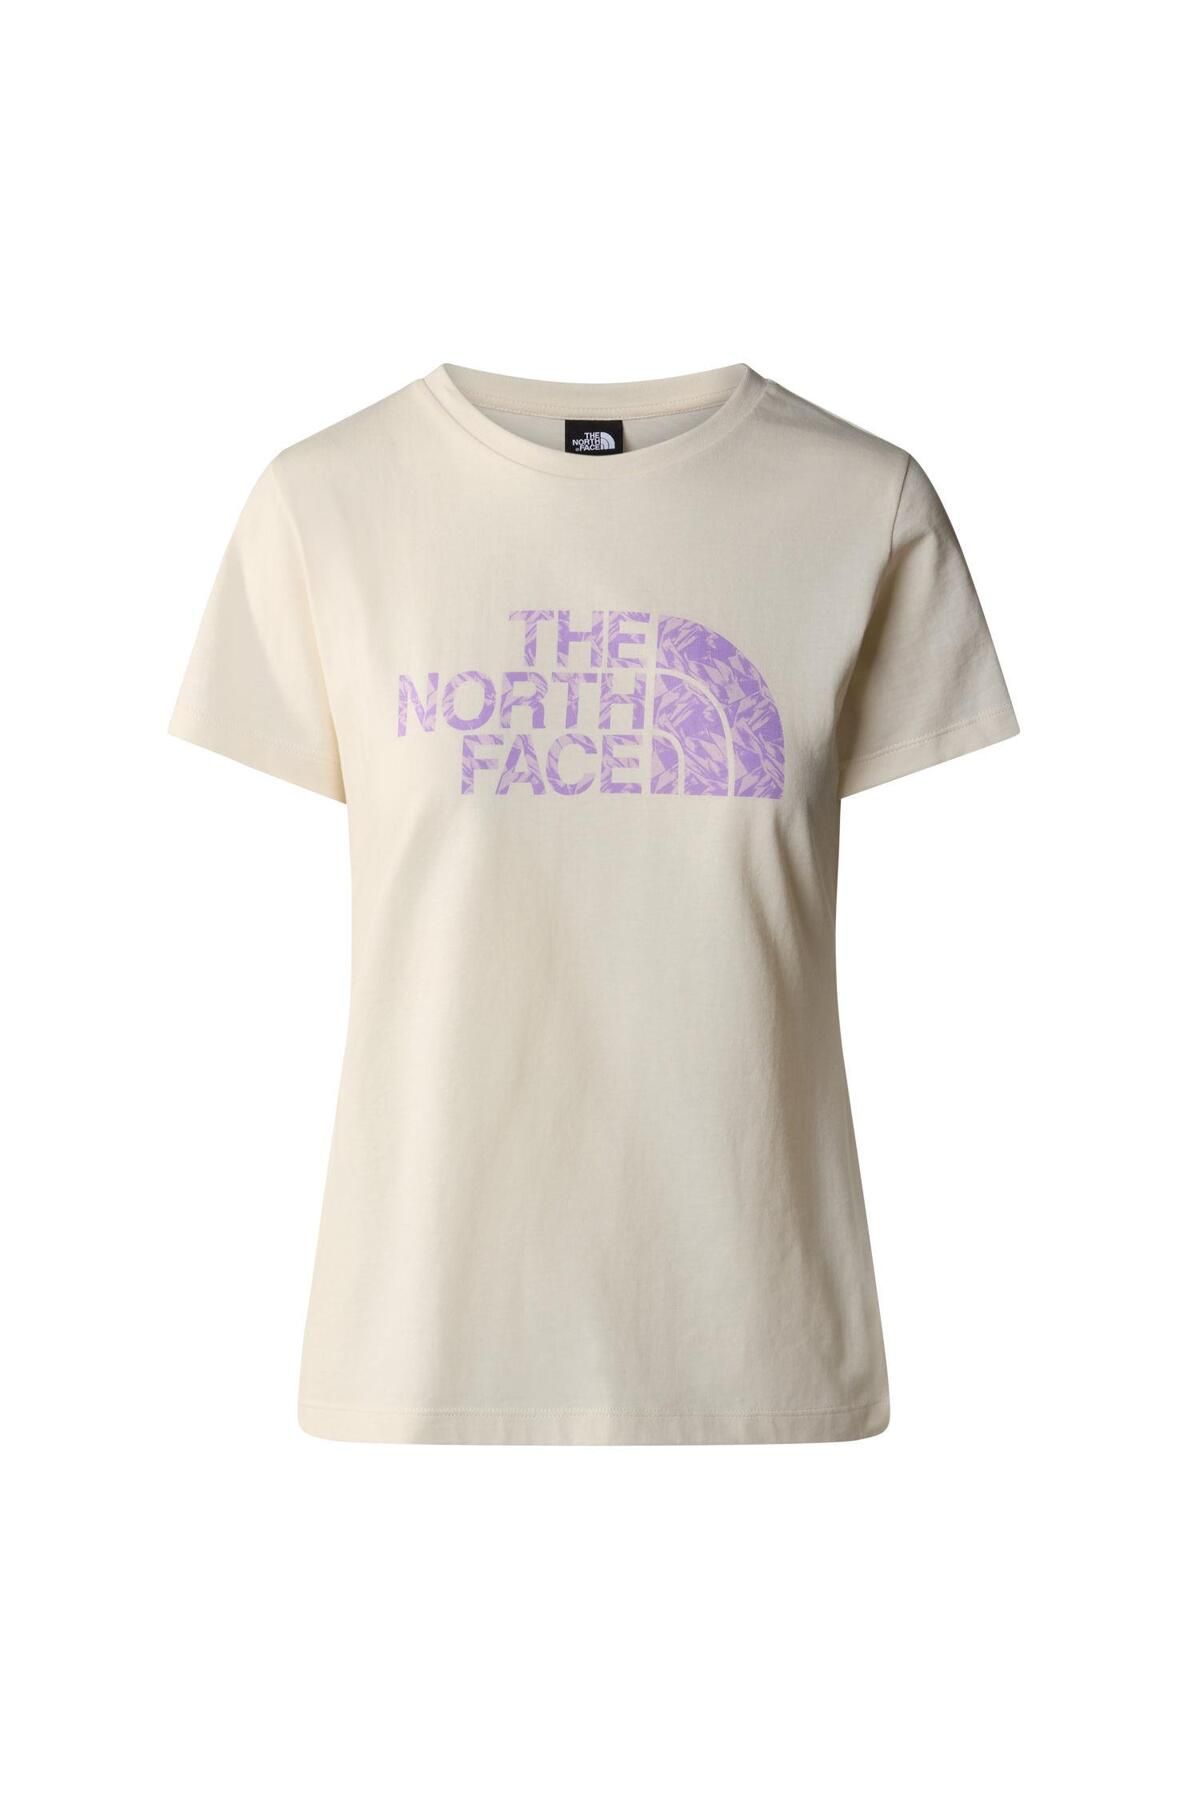 The North Face W S/s Easy Tee Kadın T-shirt Nf0a87n6yfo1 Beyaz-xl